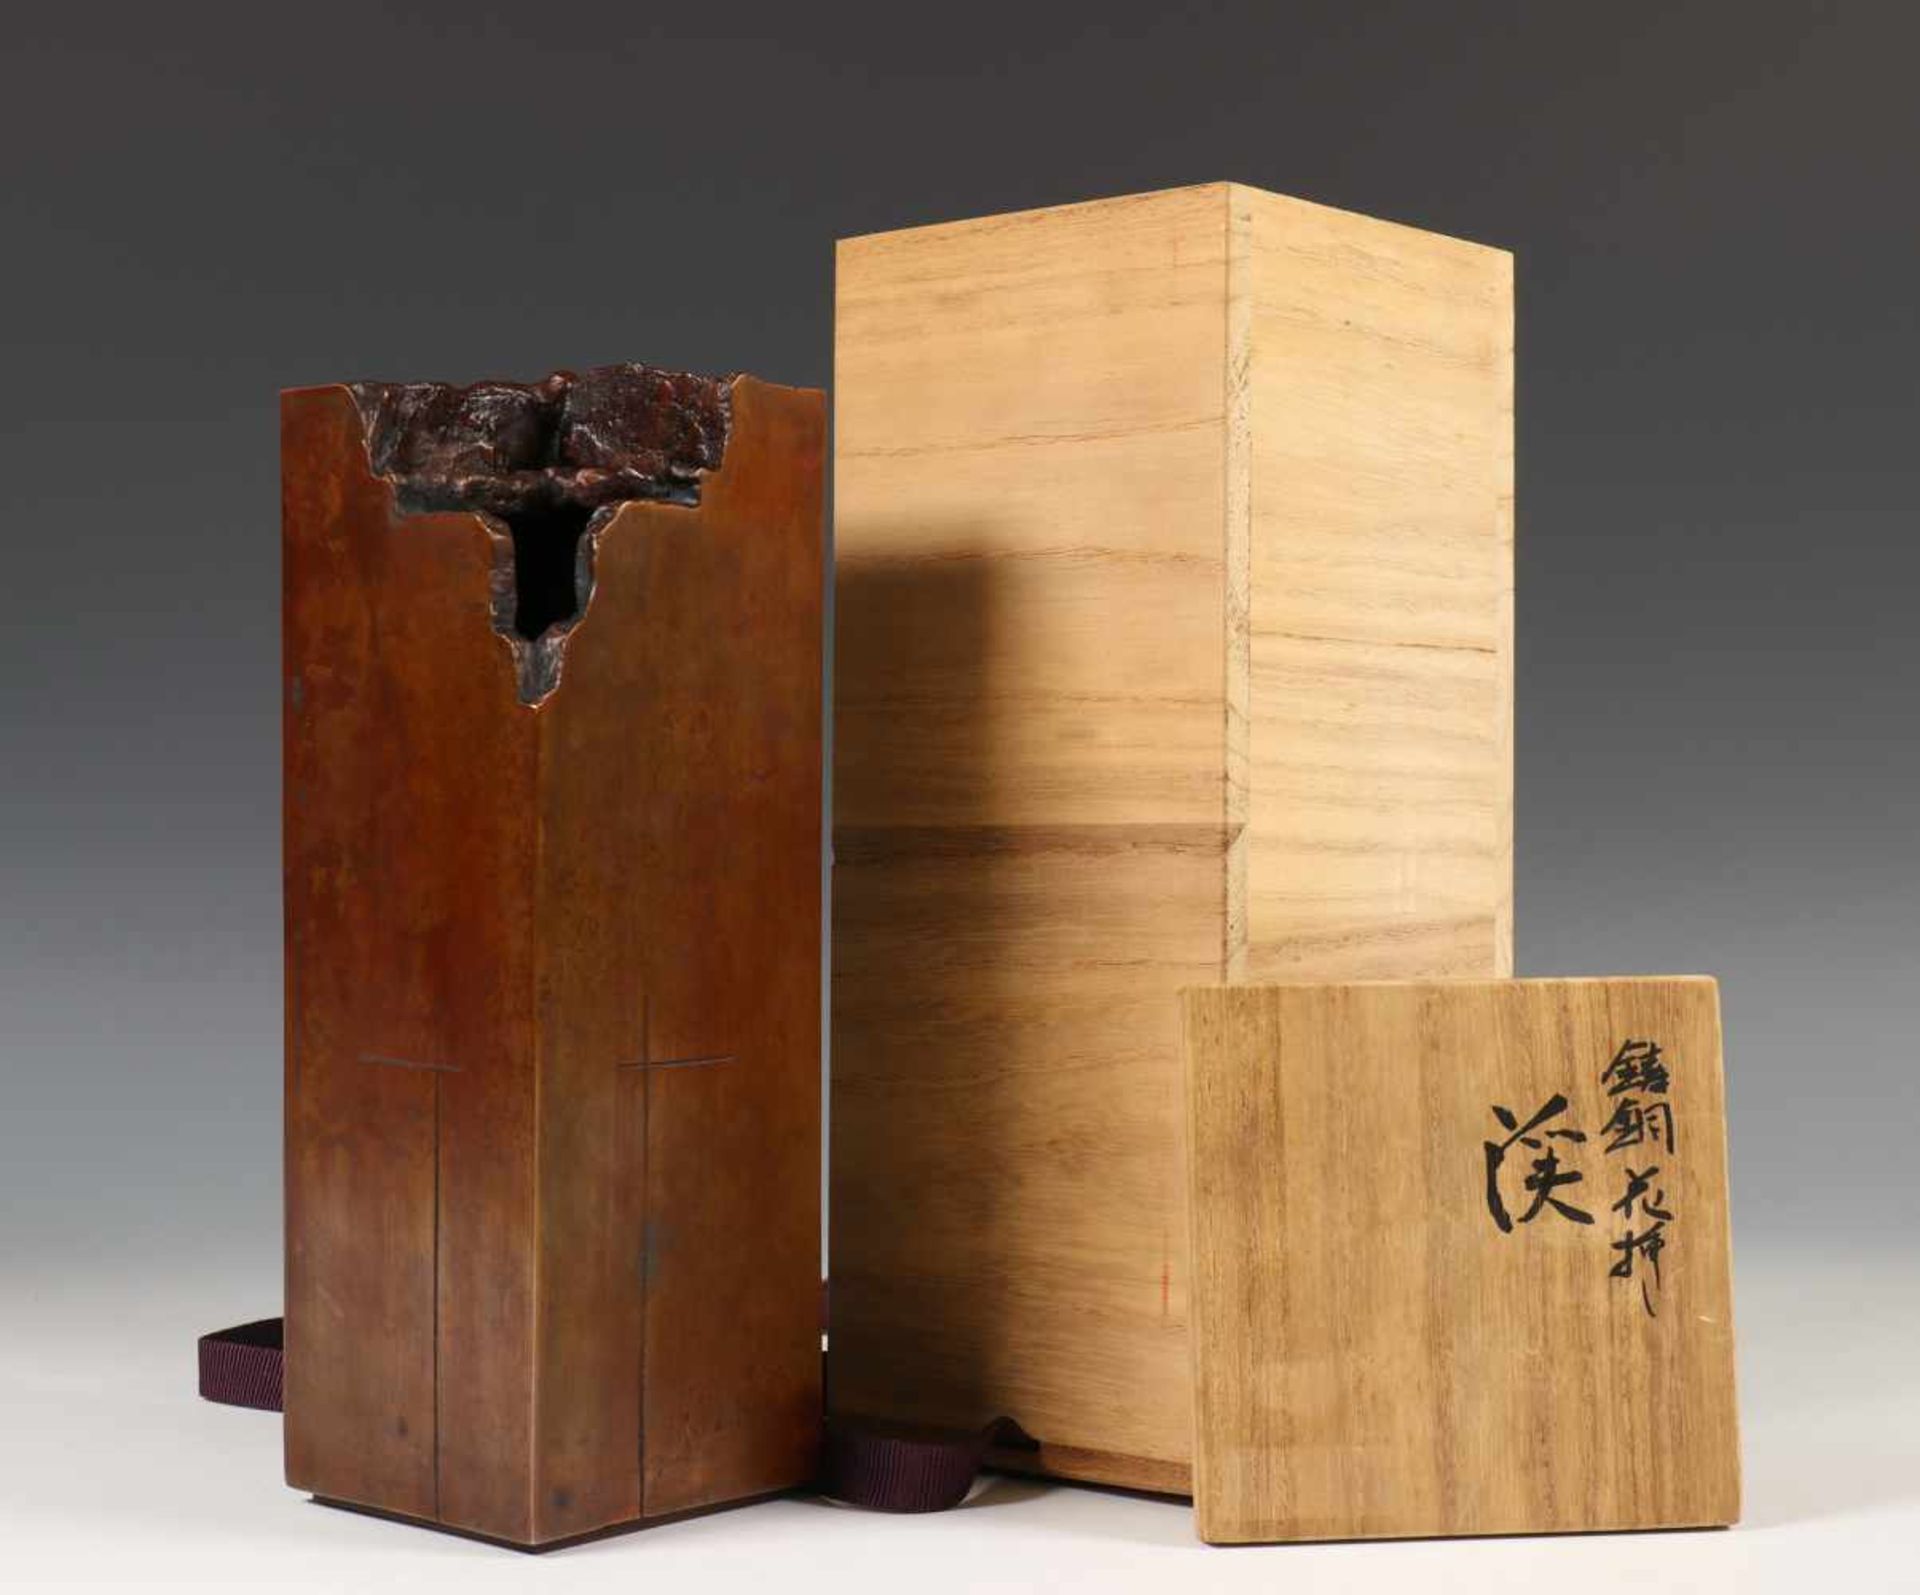 Japan, gepatineerd bronzen rechthoekige vaas, 20e eeuw,met organisch gevormde halsopening, - Bild 4 aus 4